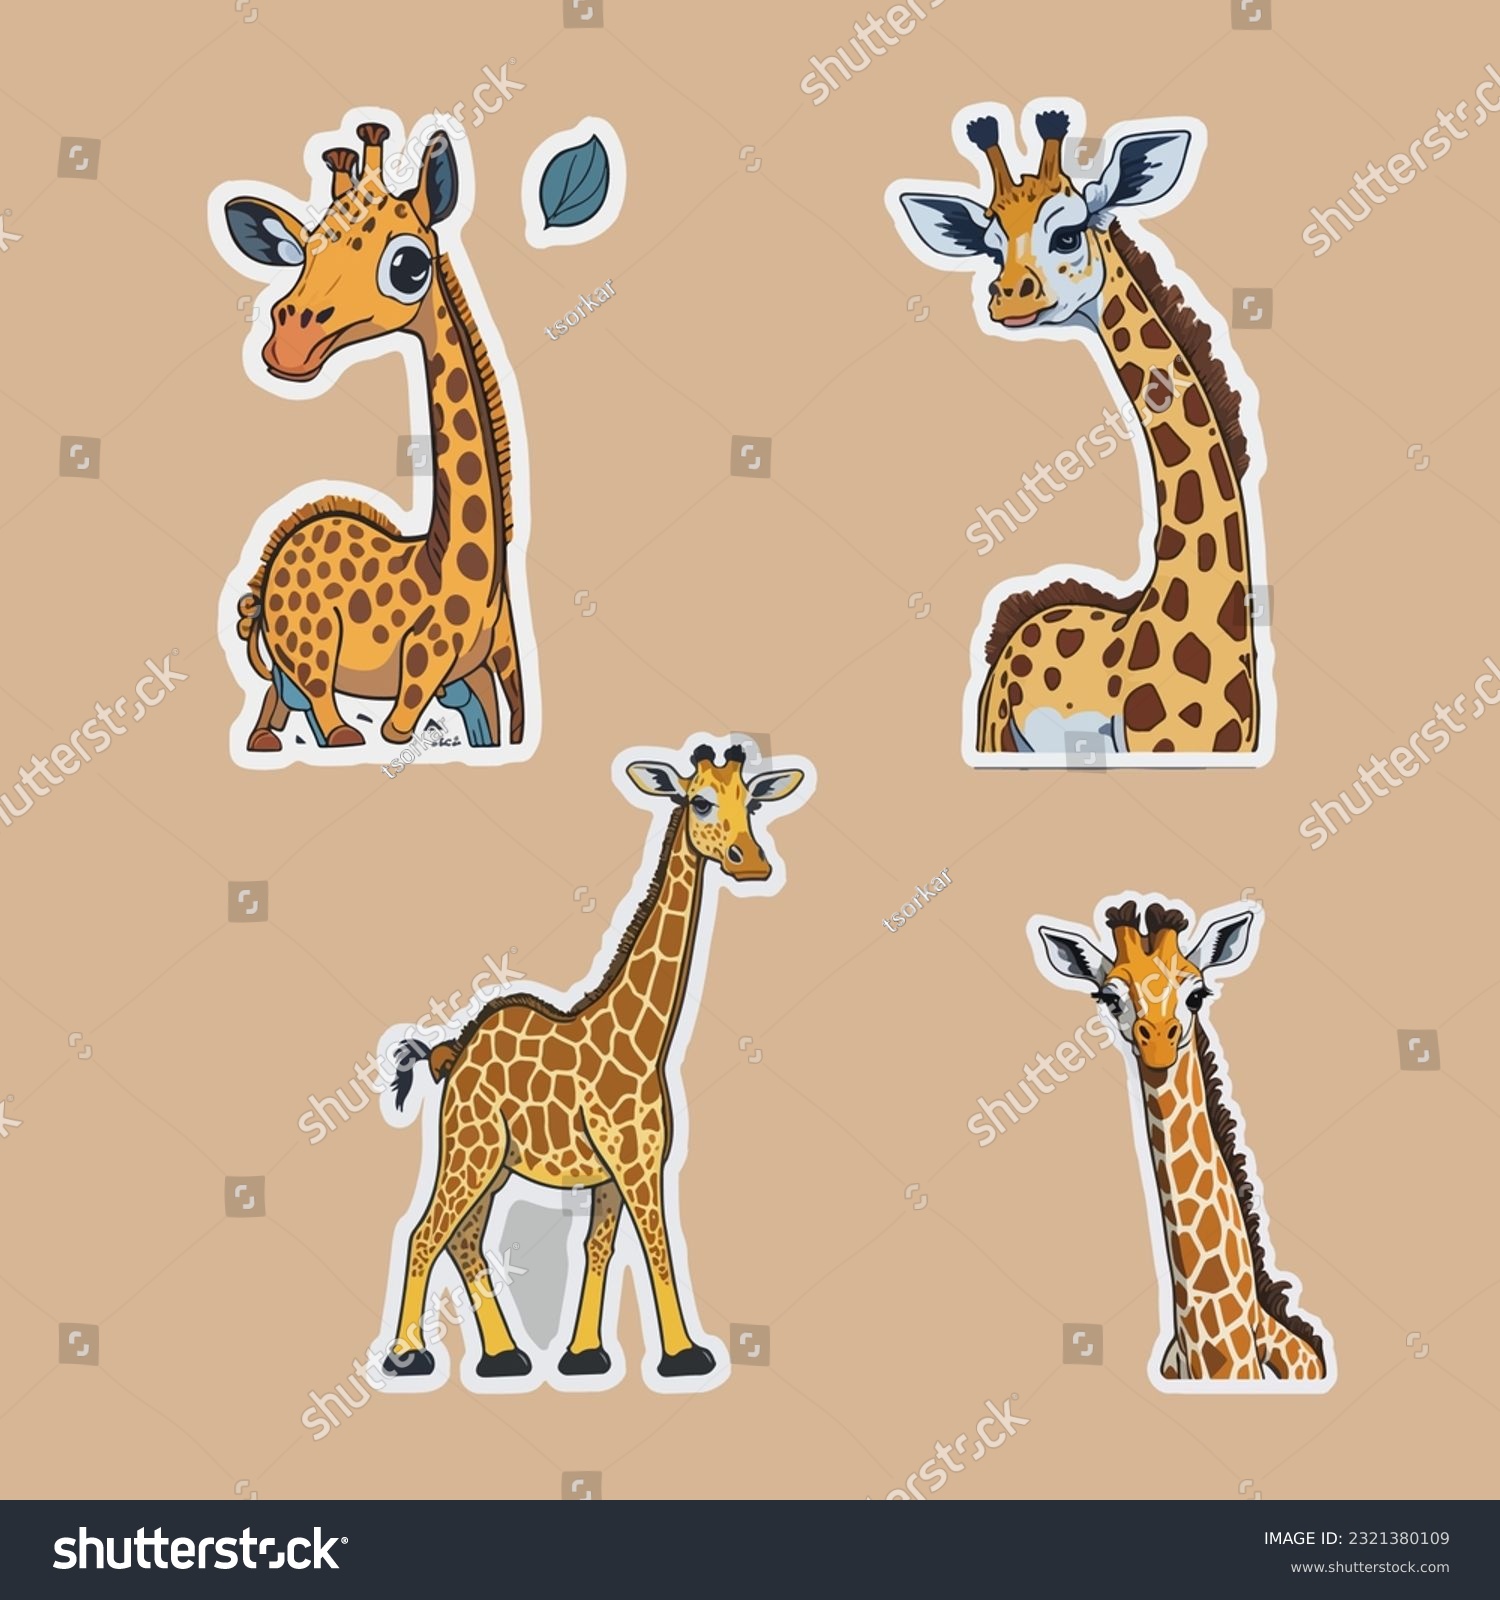 SVG of The sticker template of giraffe cartoon character svg